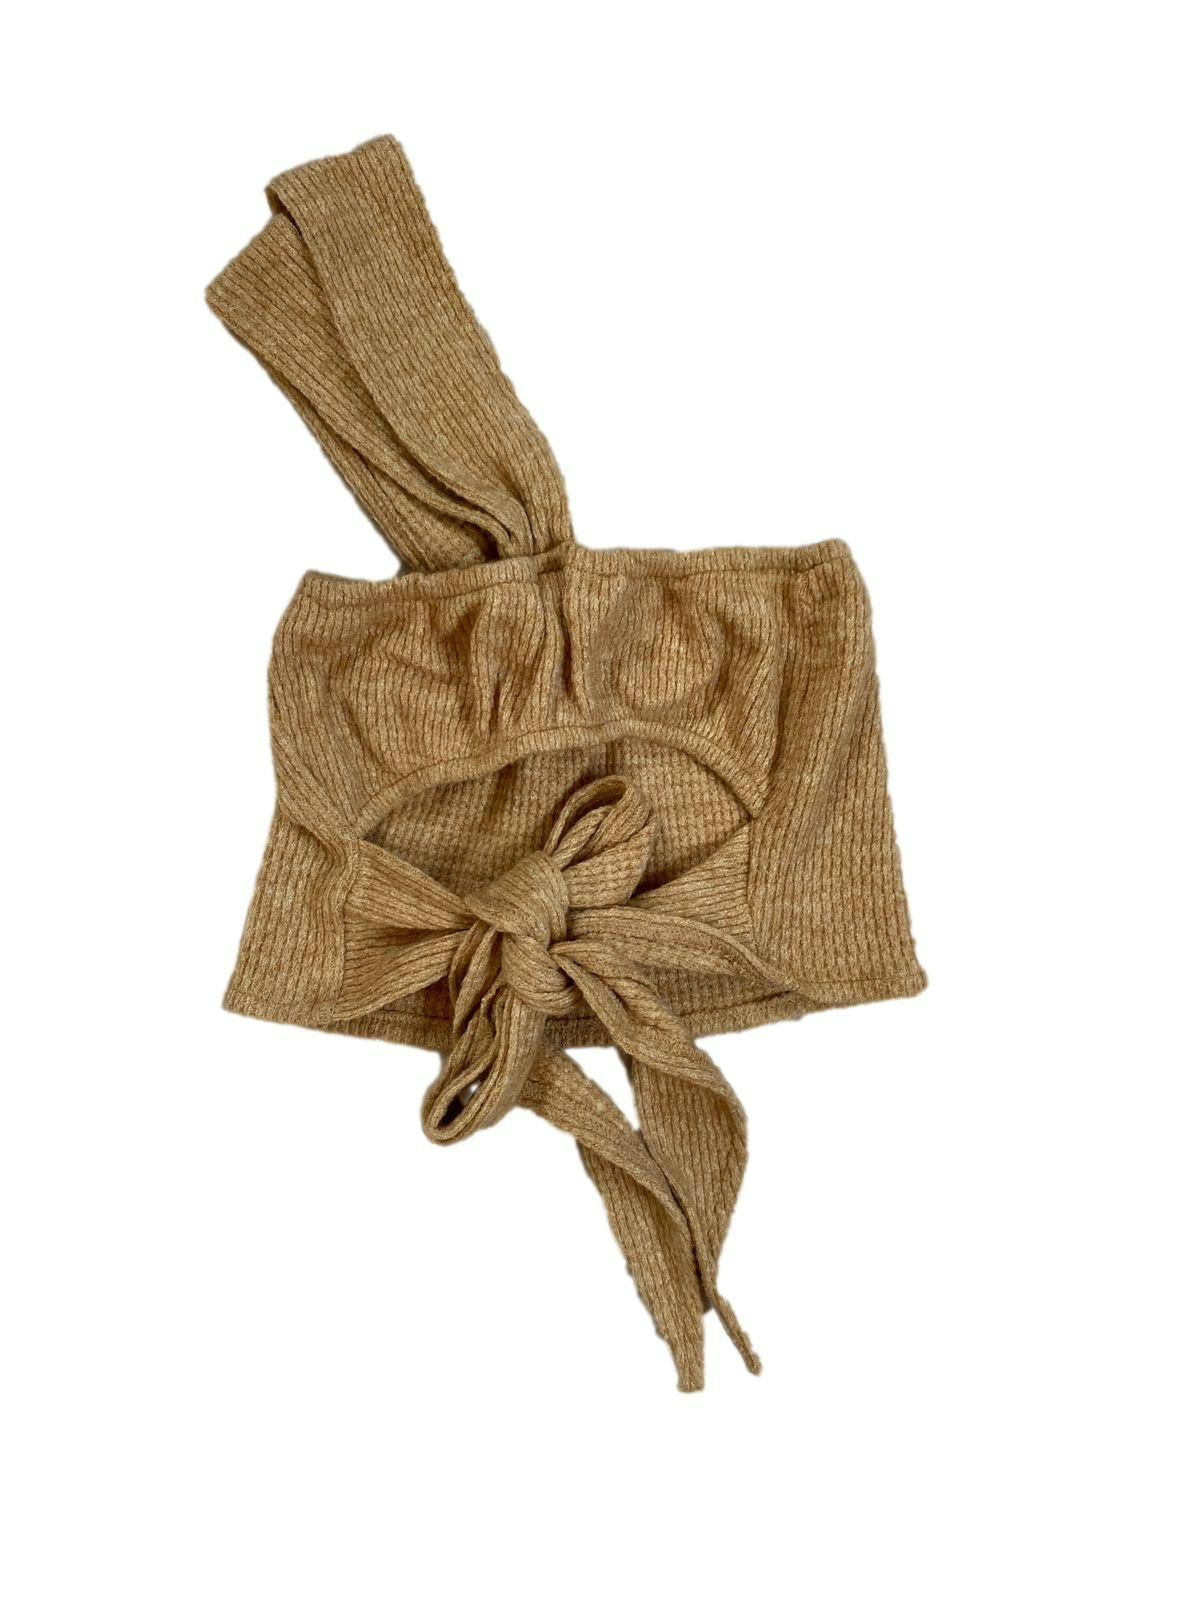 Top Kavaliana tejido beige one shoulder con tirantes para amarrar en la espalda Busto: 48 cm (sin estirar) Largo: 19 cm Nuevo con etiqueta. Precio original 129 soles